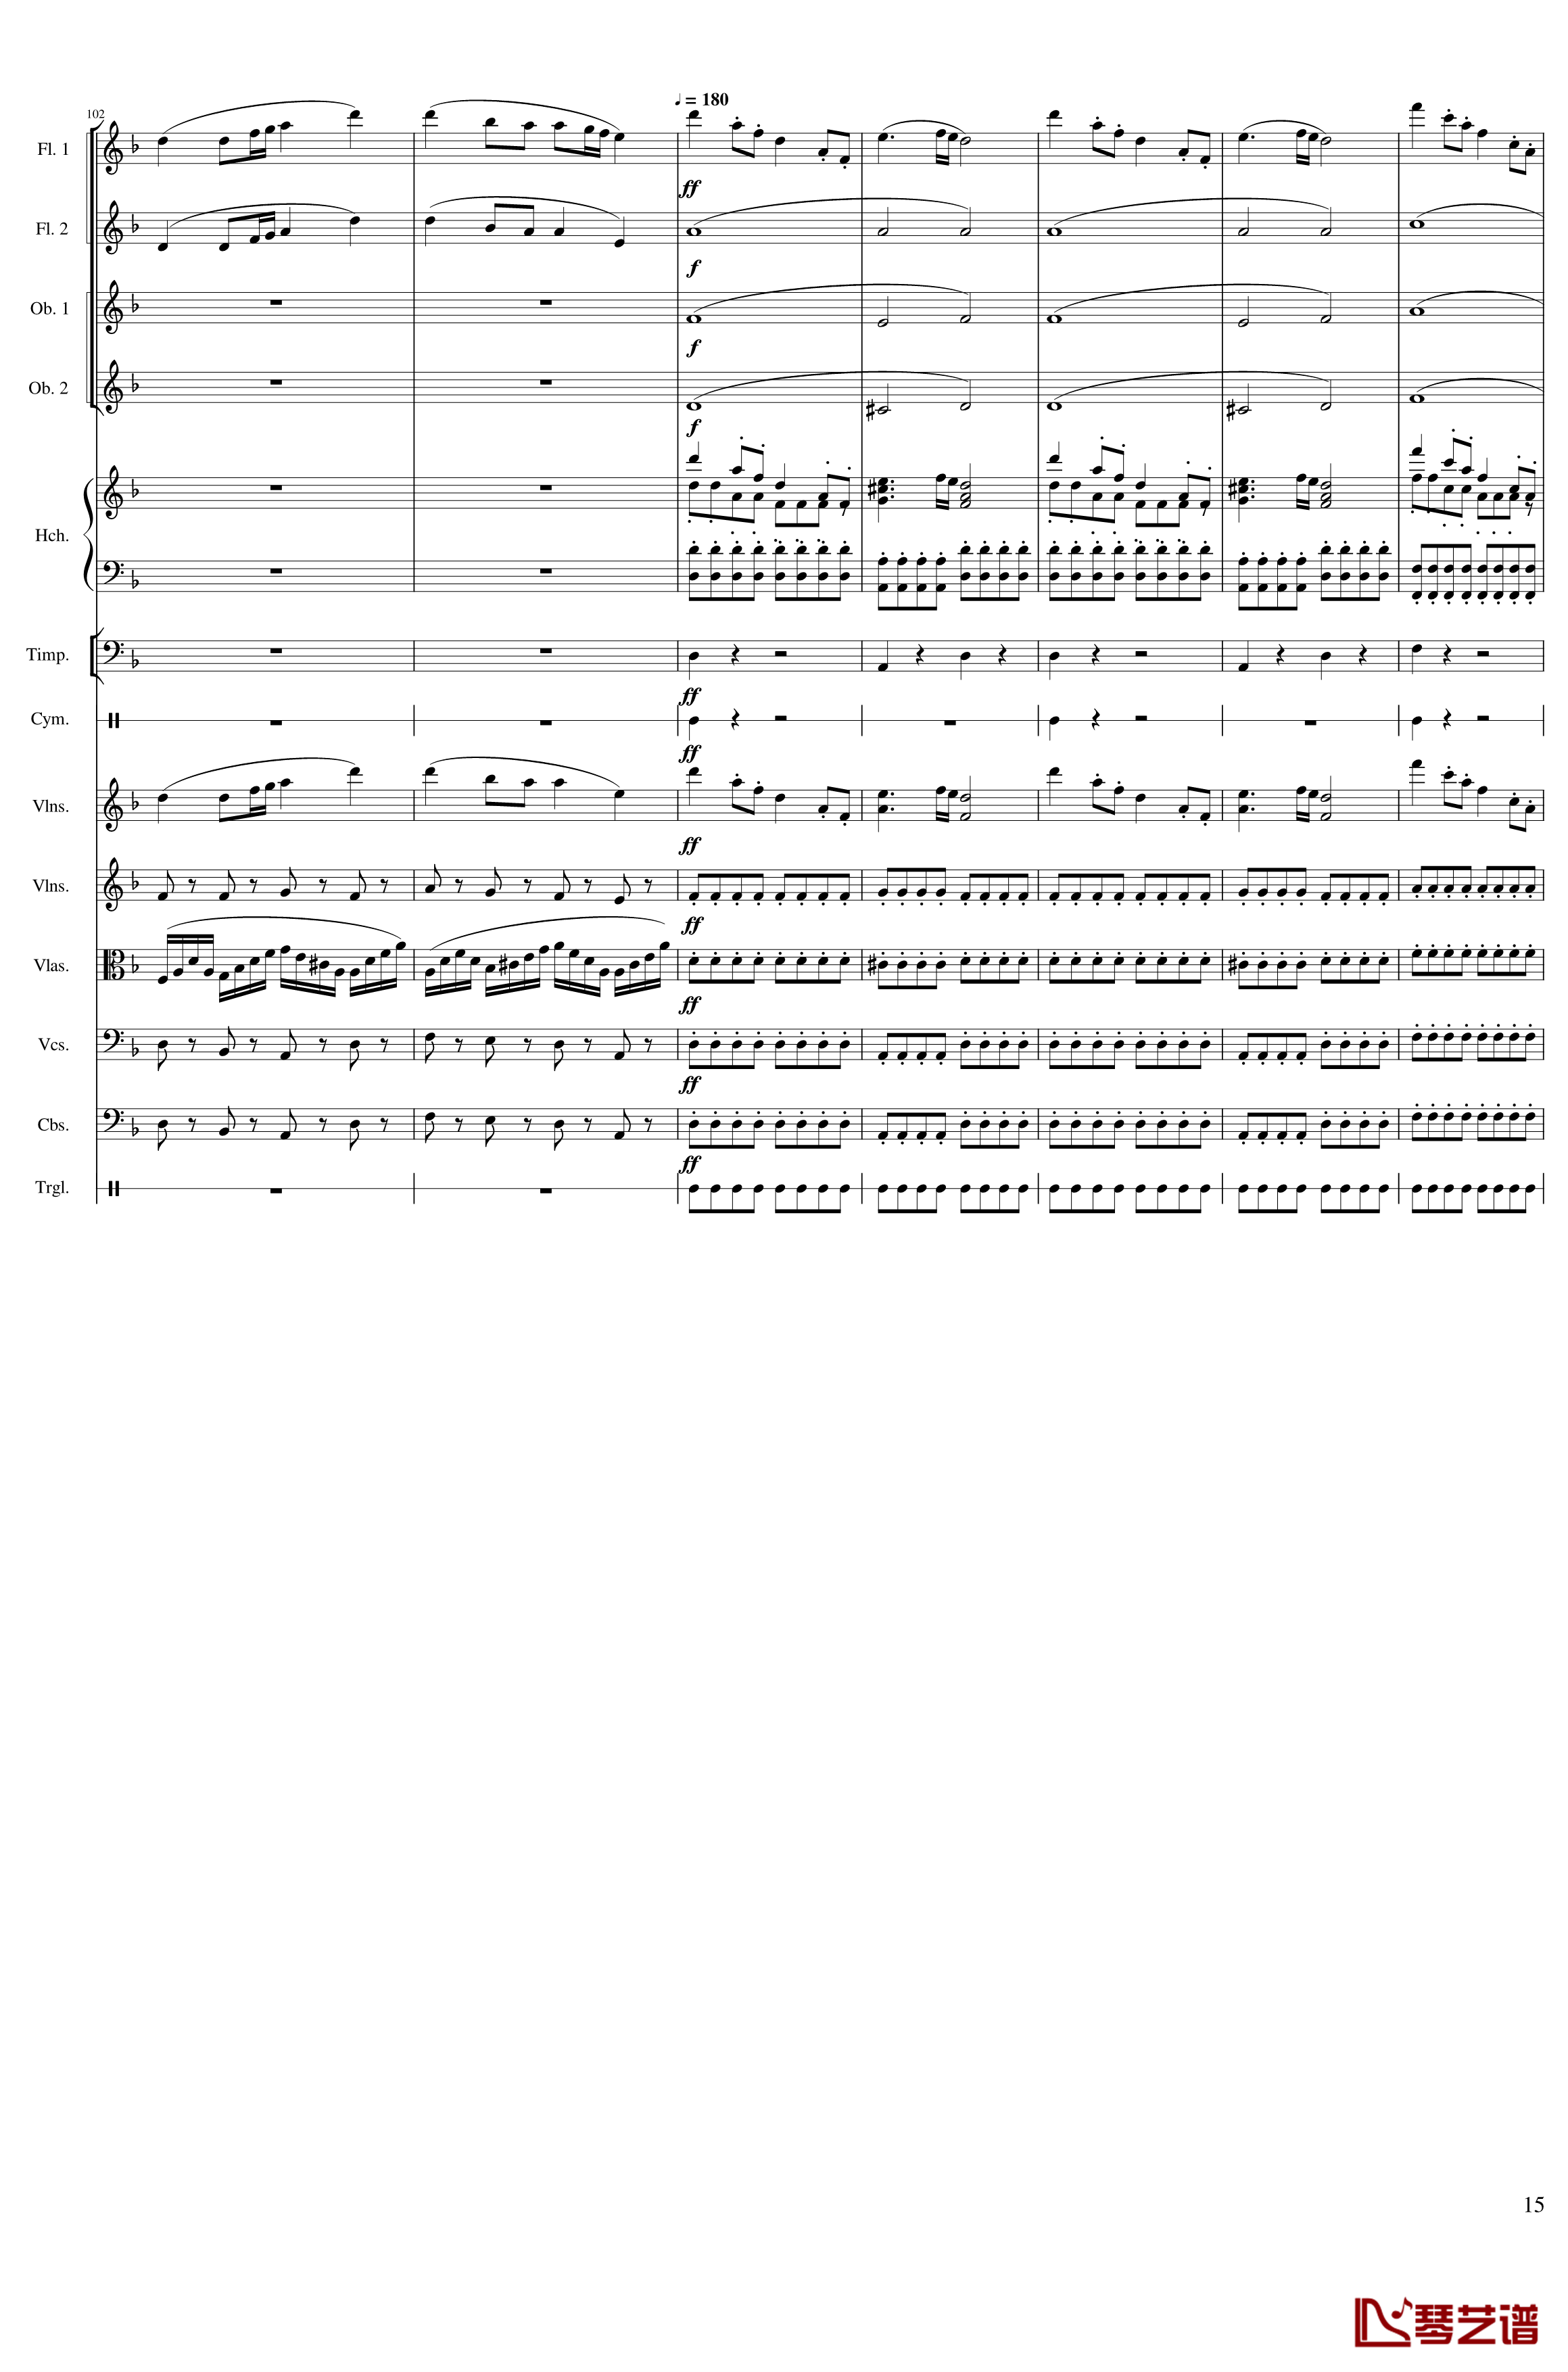 春节序曲钢琴谱-作品121-一个球15